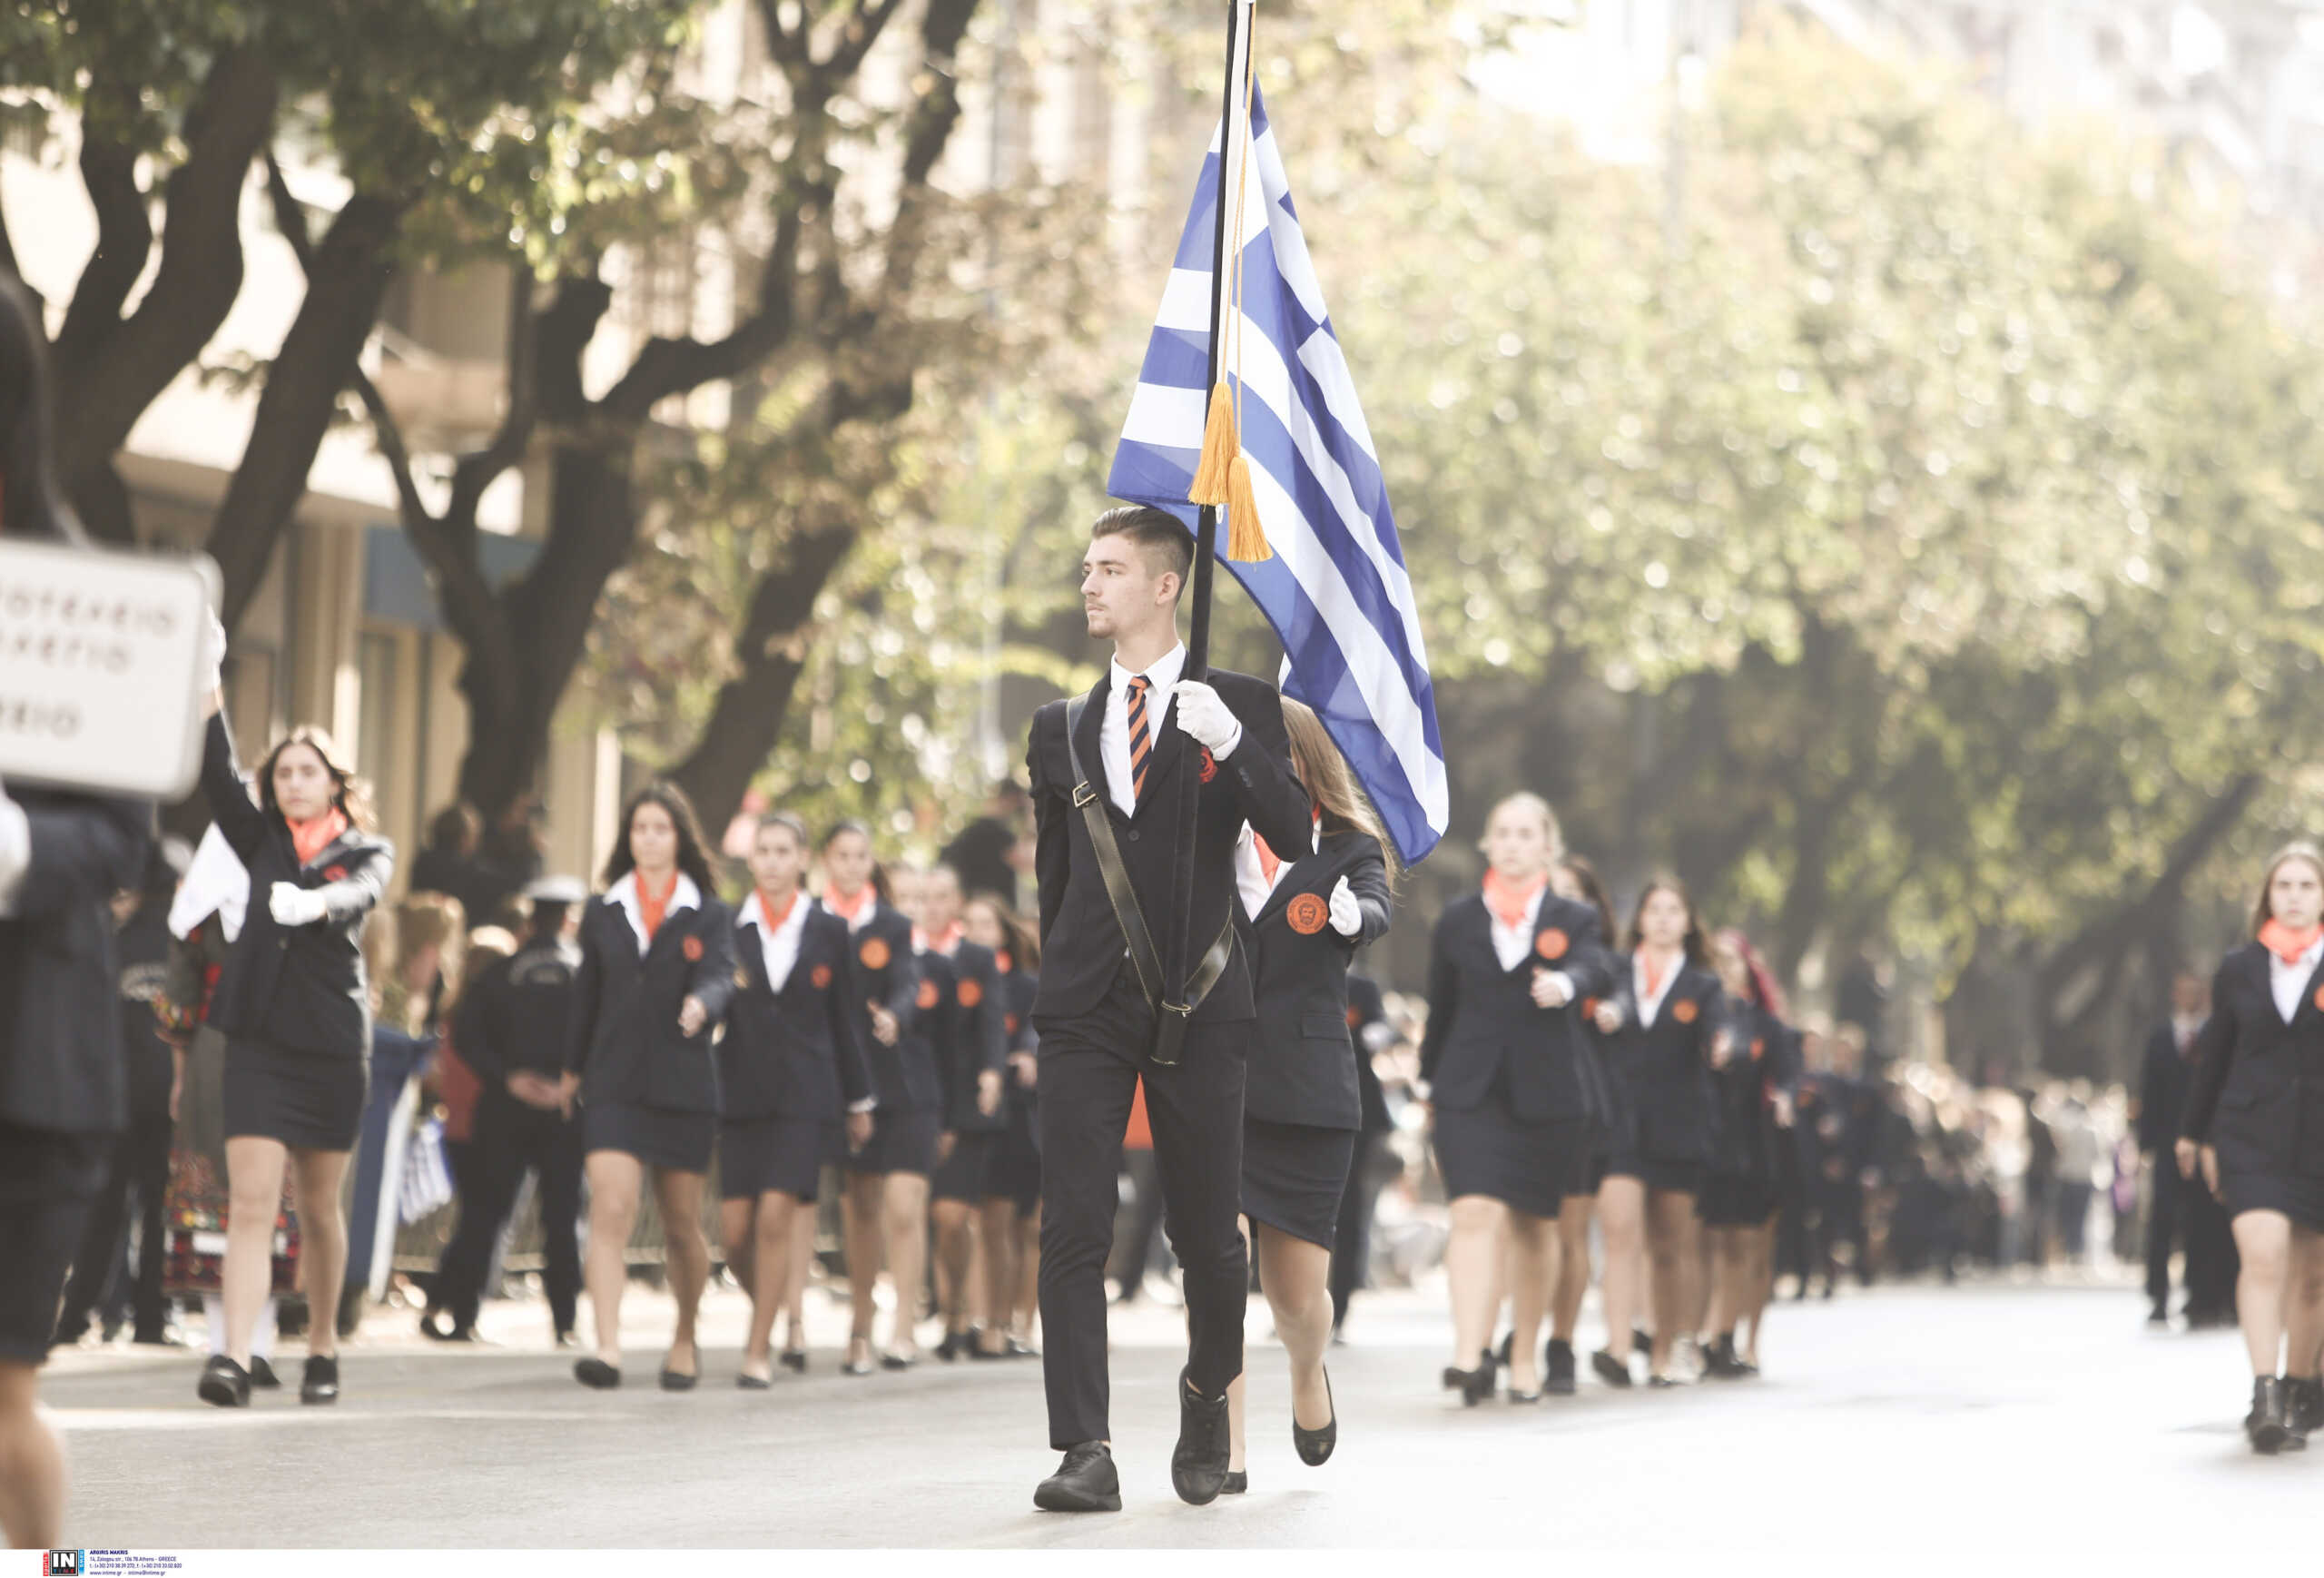 28η Οκτωβρίου: Μαθητική παρέλαση στη Θεσσαλονίκη – Συμμετείχαν 21 σχολεία